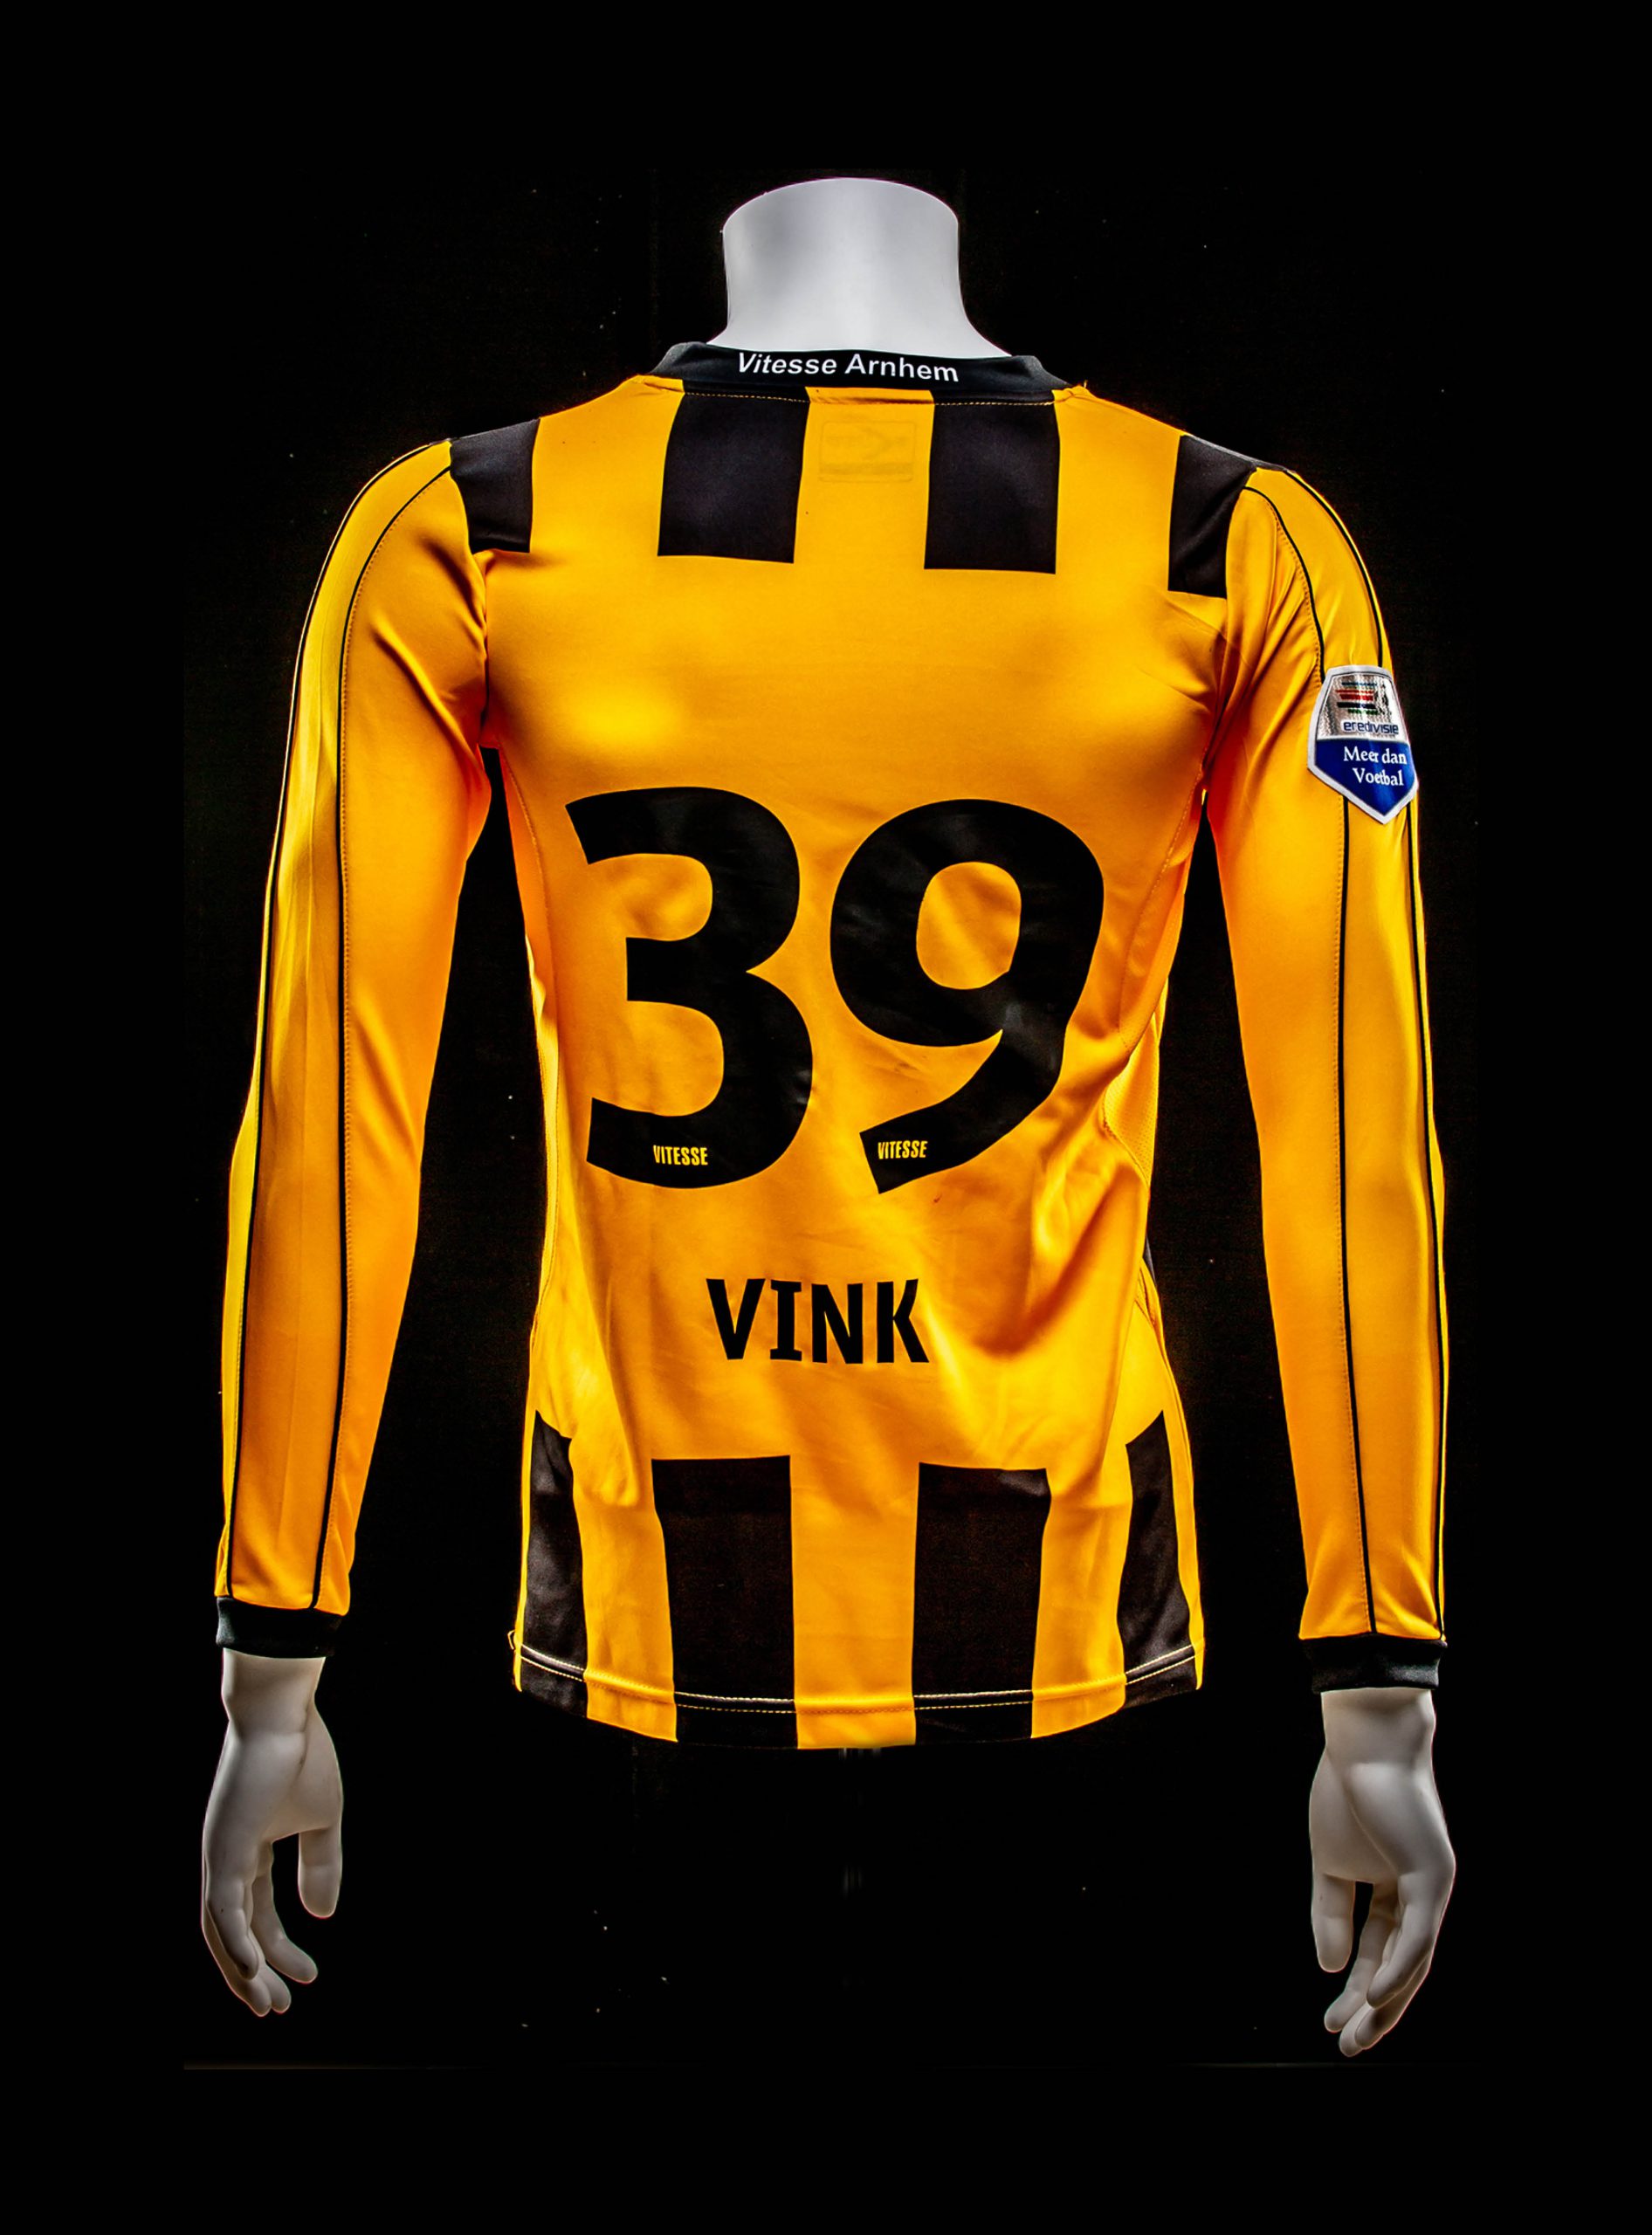 #39 Emilio Vink